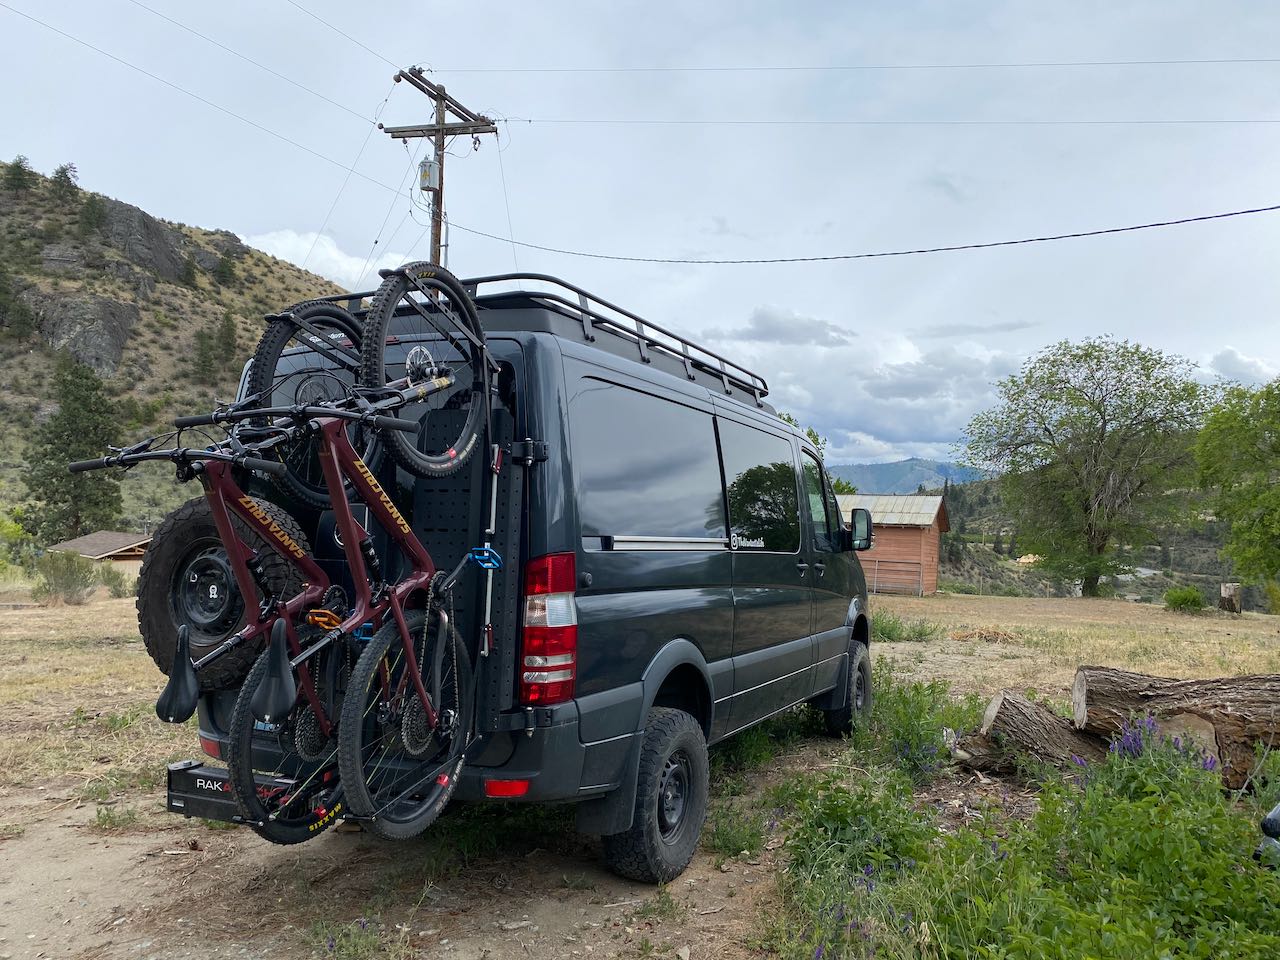 Sprinter van with Owl vans sherpa rack and Santa Cruz bikes